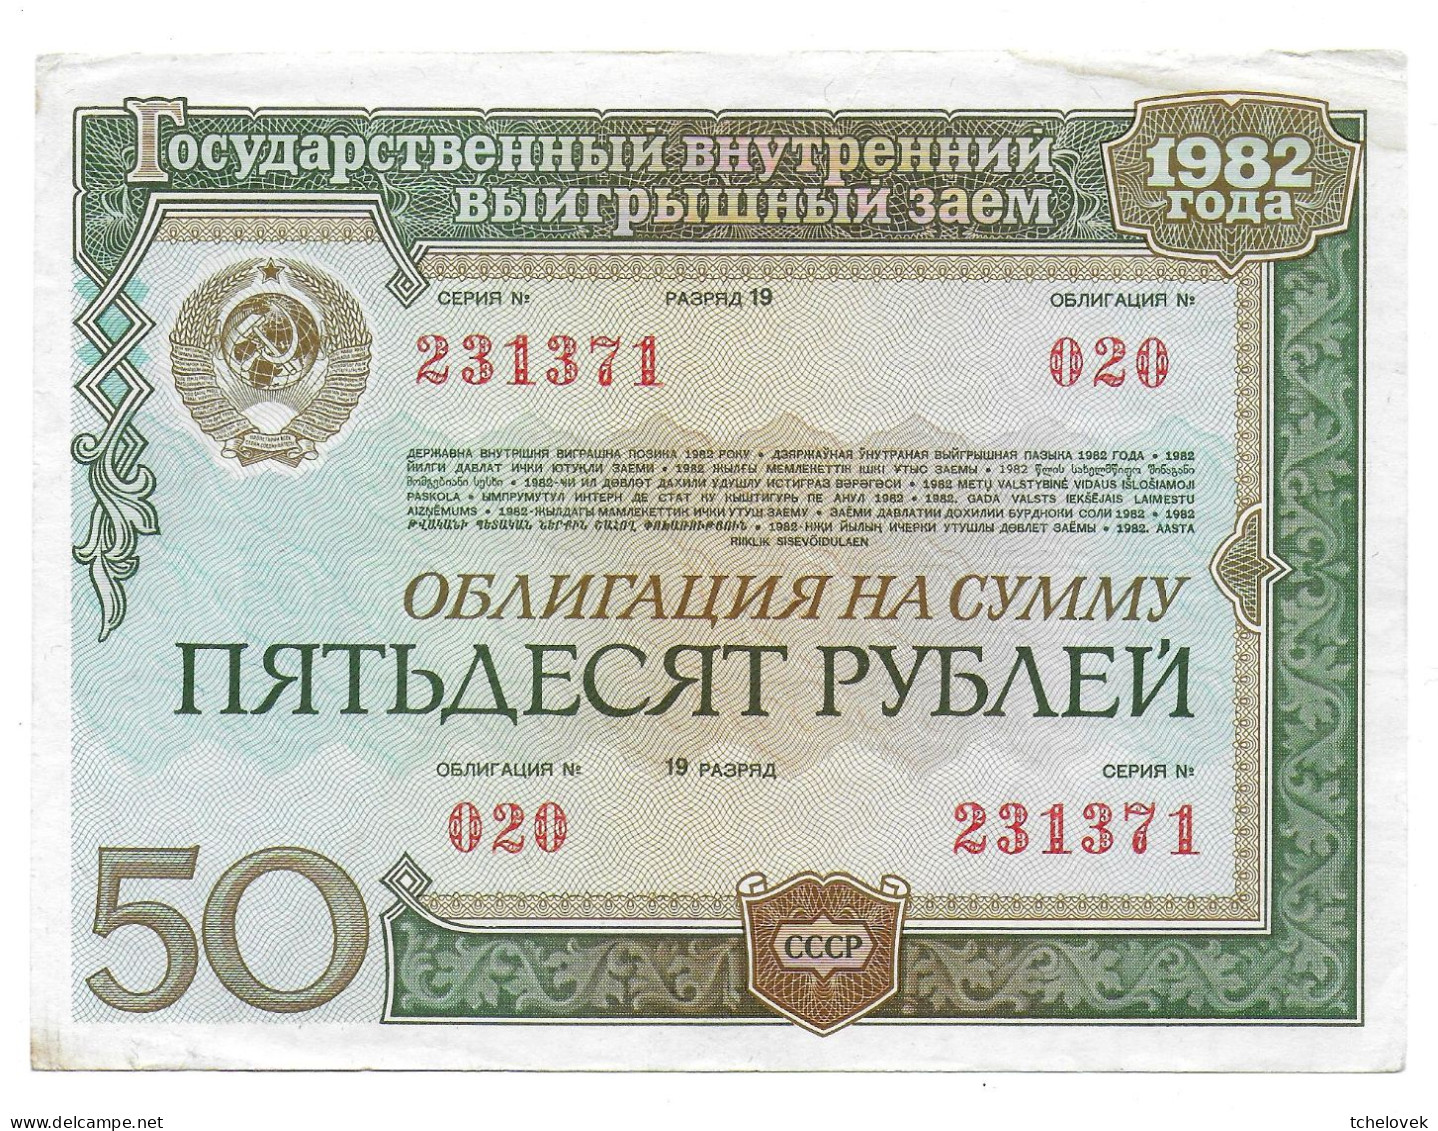 (Billets). Russie Russia URSS USSR State Loan Obligation 50 R 1982 N° 231371 - Russia